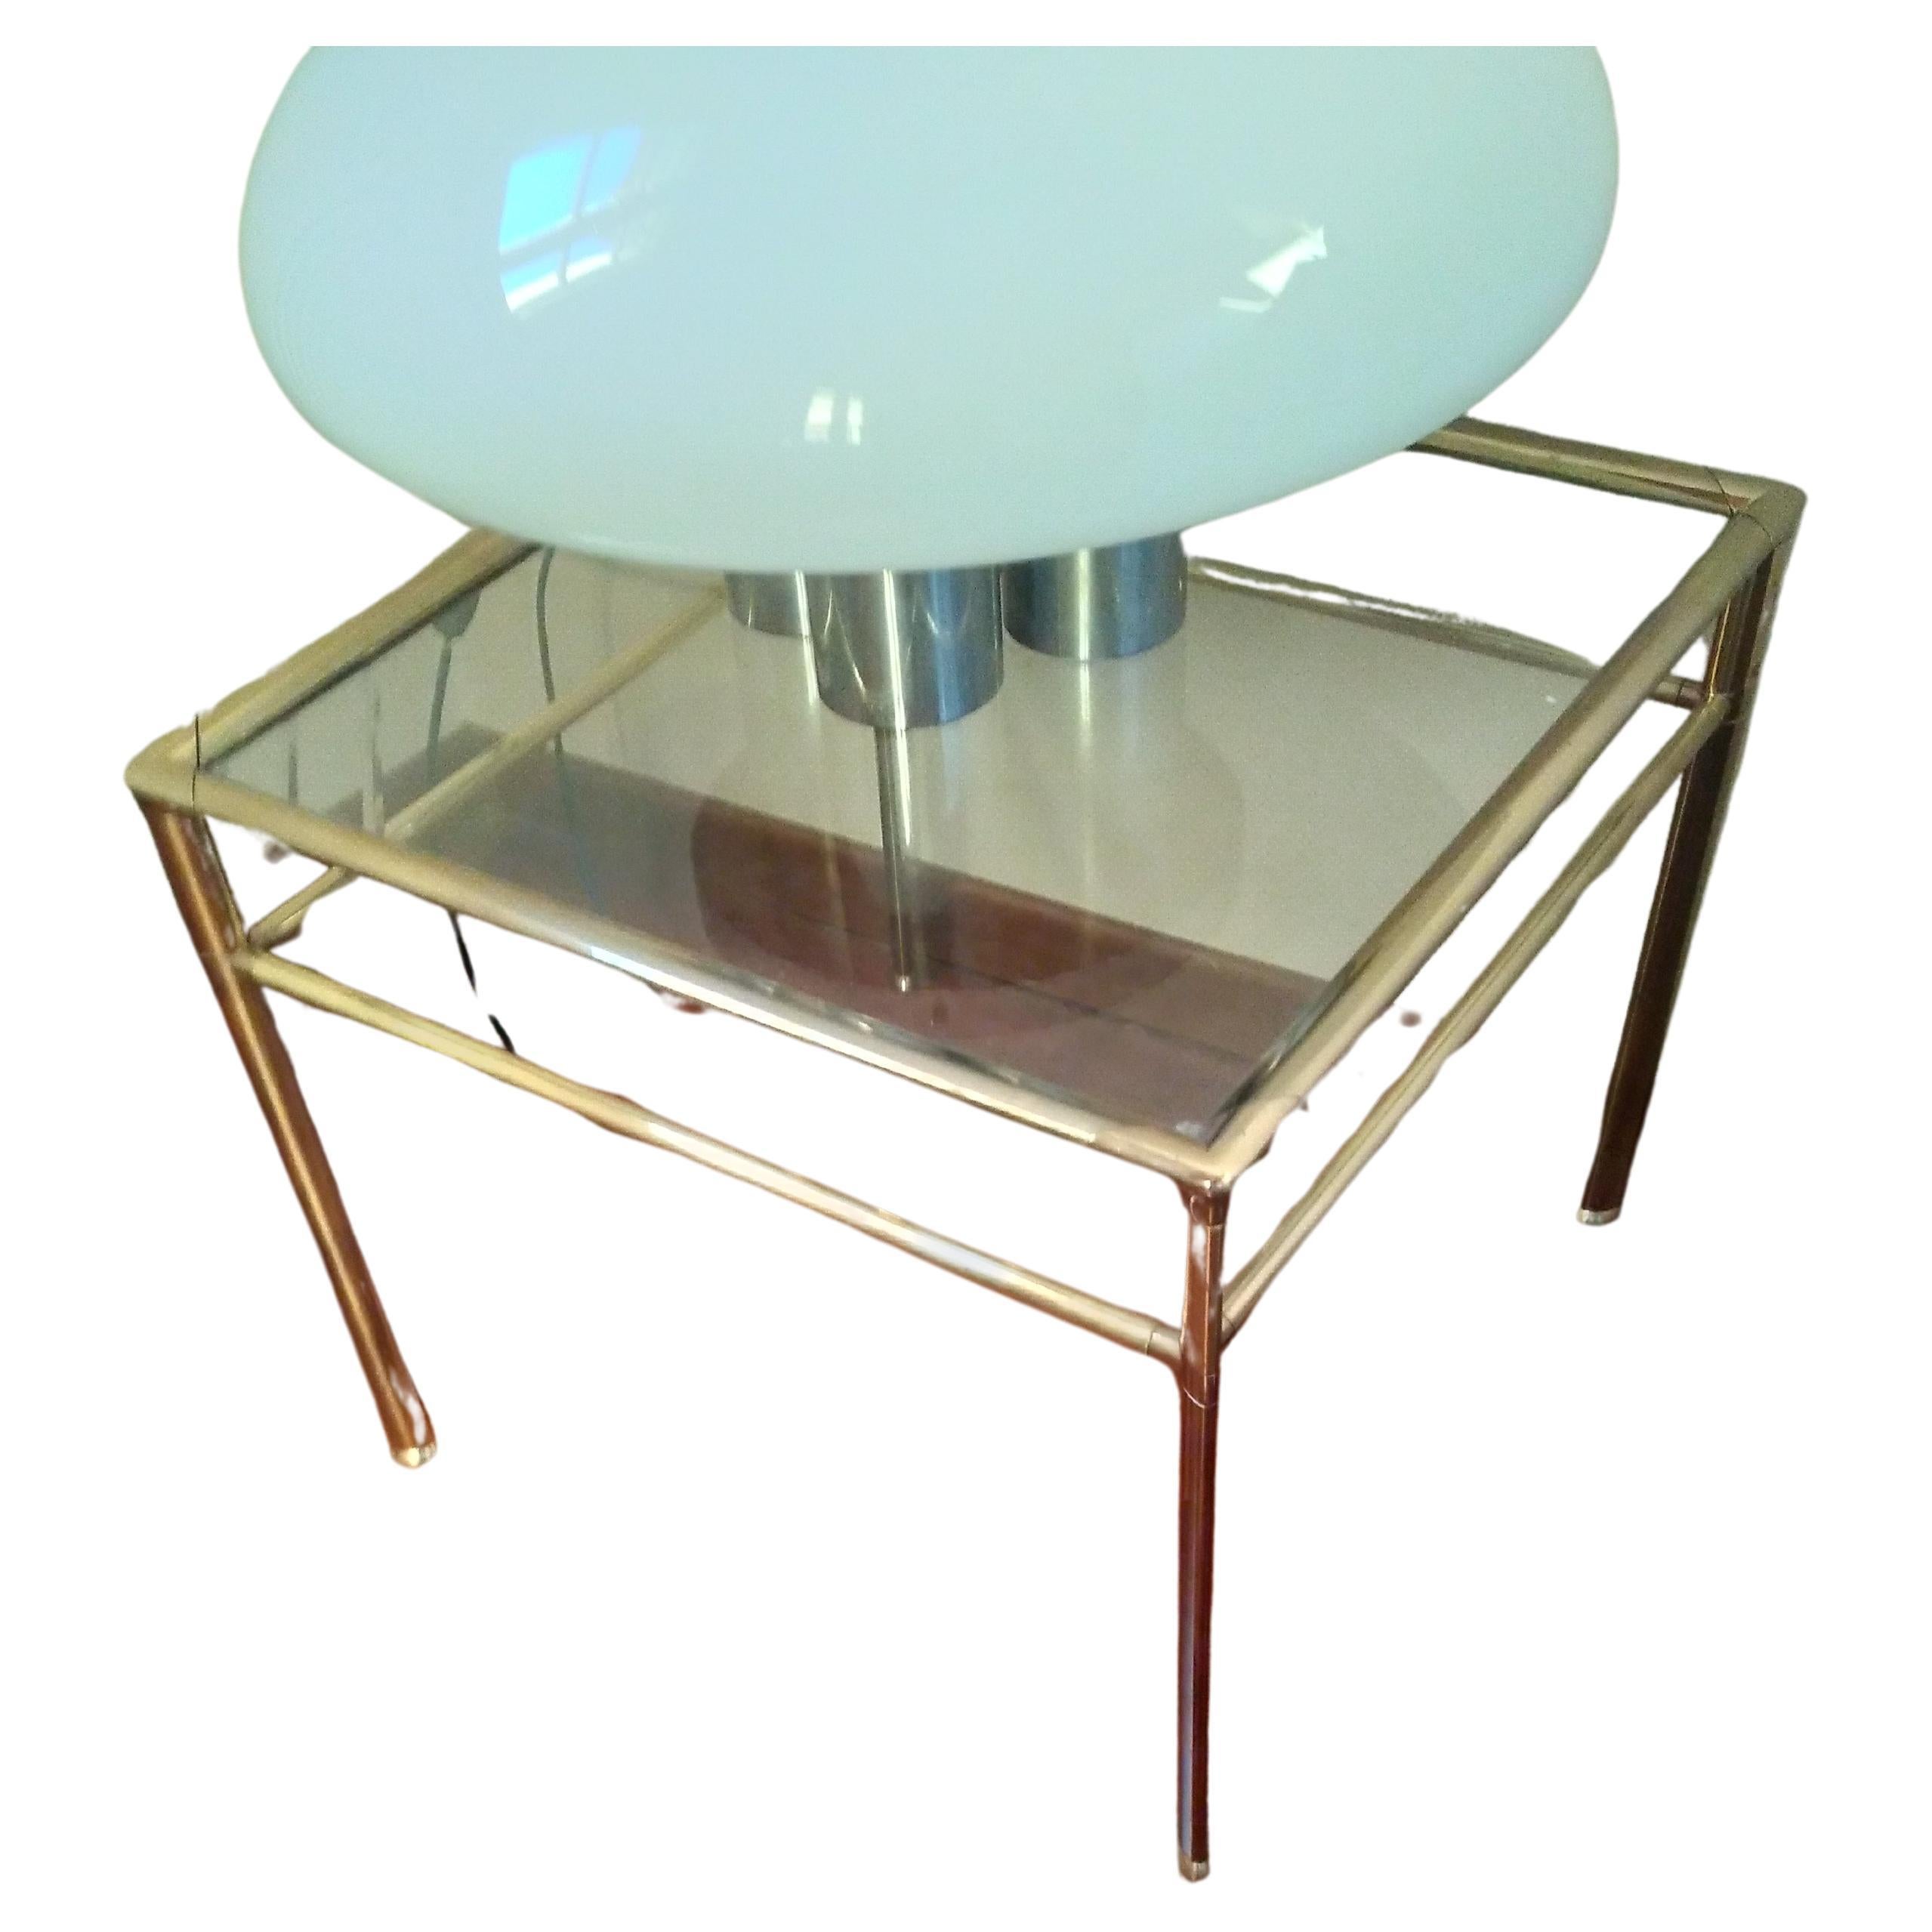 Tavolo basso  in ottone e vetro Italia 1960 . Questo tavolo è originale in ogni sua parte. Il top in vetro è inciso con una decorazione geometrica .Il tavolo ha una linea elegante e versatile , che lo rende un complemento d'arredo eccezionale. 